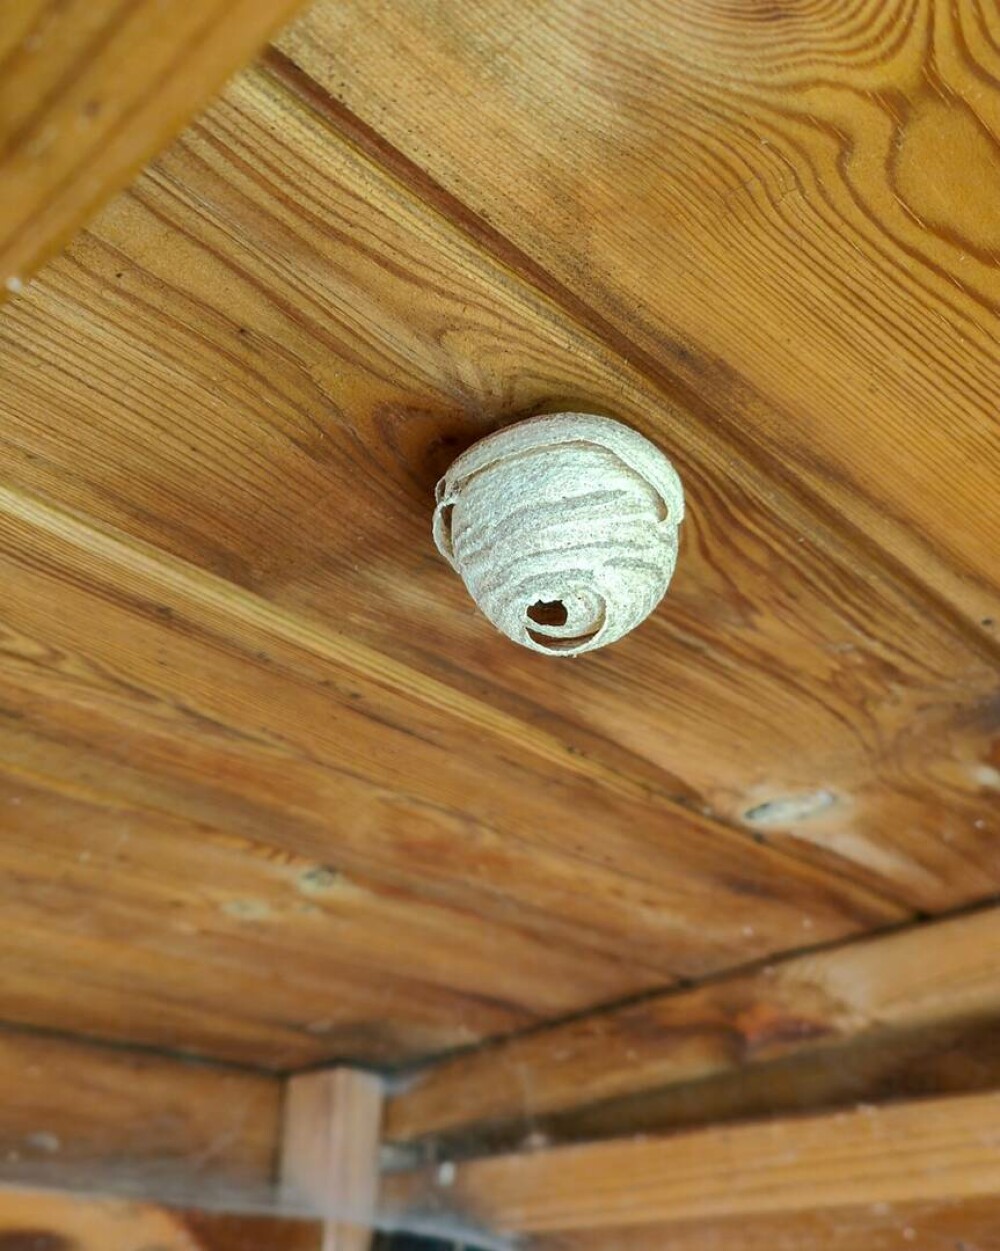 Imagini rare. Cum arată interiorul unui cuib de viespi. Un fotograf a surprins și Regina. GALERIE FOTO - Imaginea 2